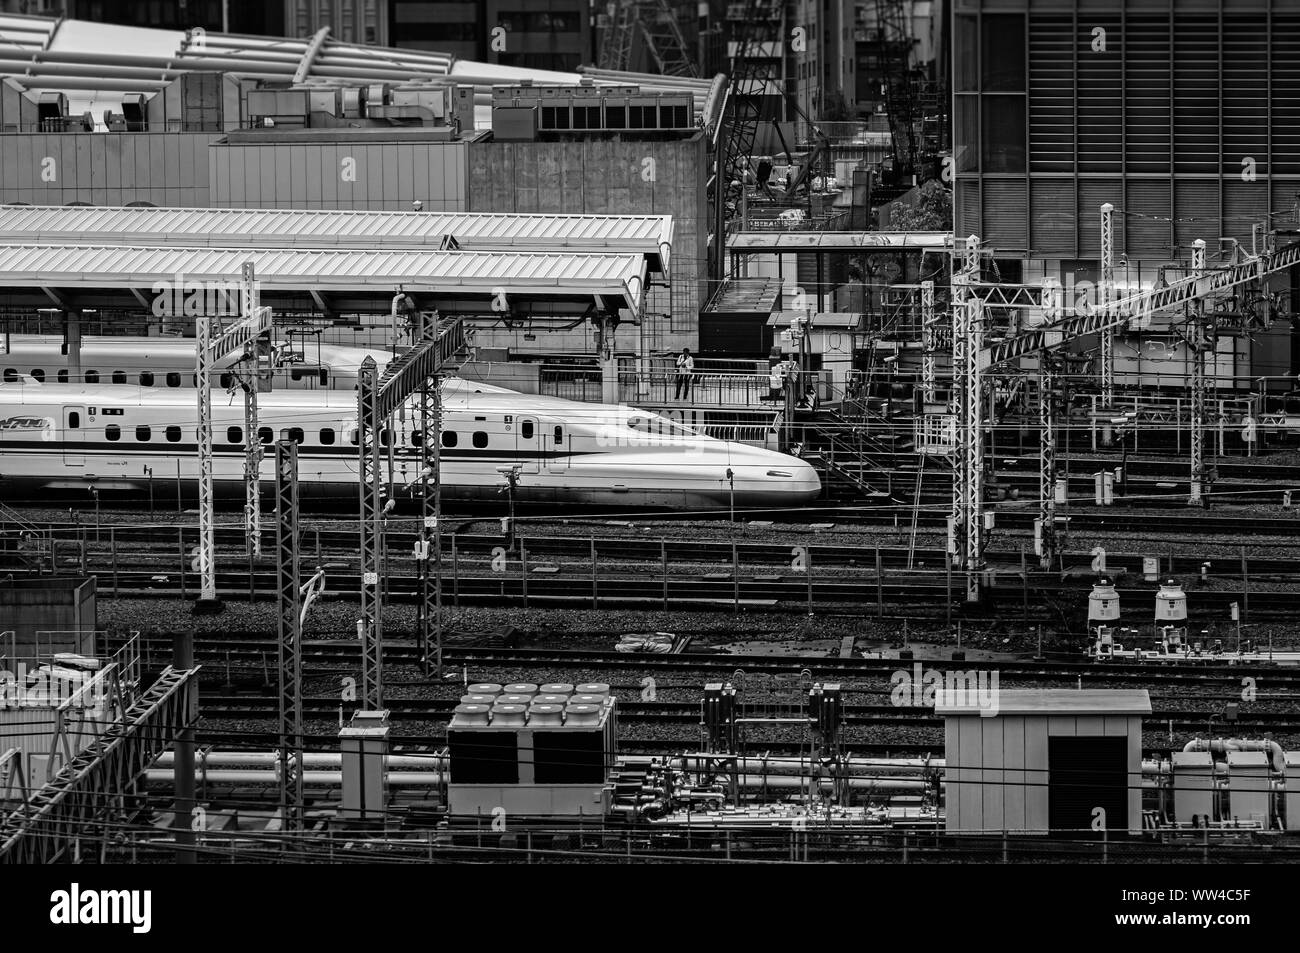 DEC 6, 2019 Tokyo, Japan - Tokio Bahnhof JR Bahnhof und Shinkansen Tracks von luftaufnahme. Zug Verkehr im Bahnhof von Tokio Plattform in Abend Stockfoto